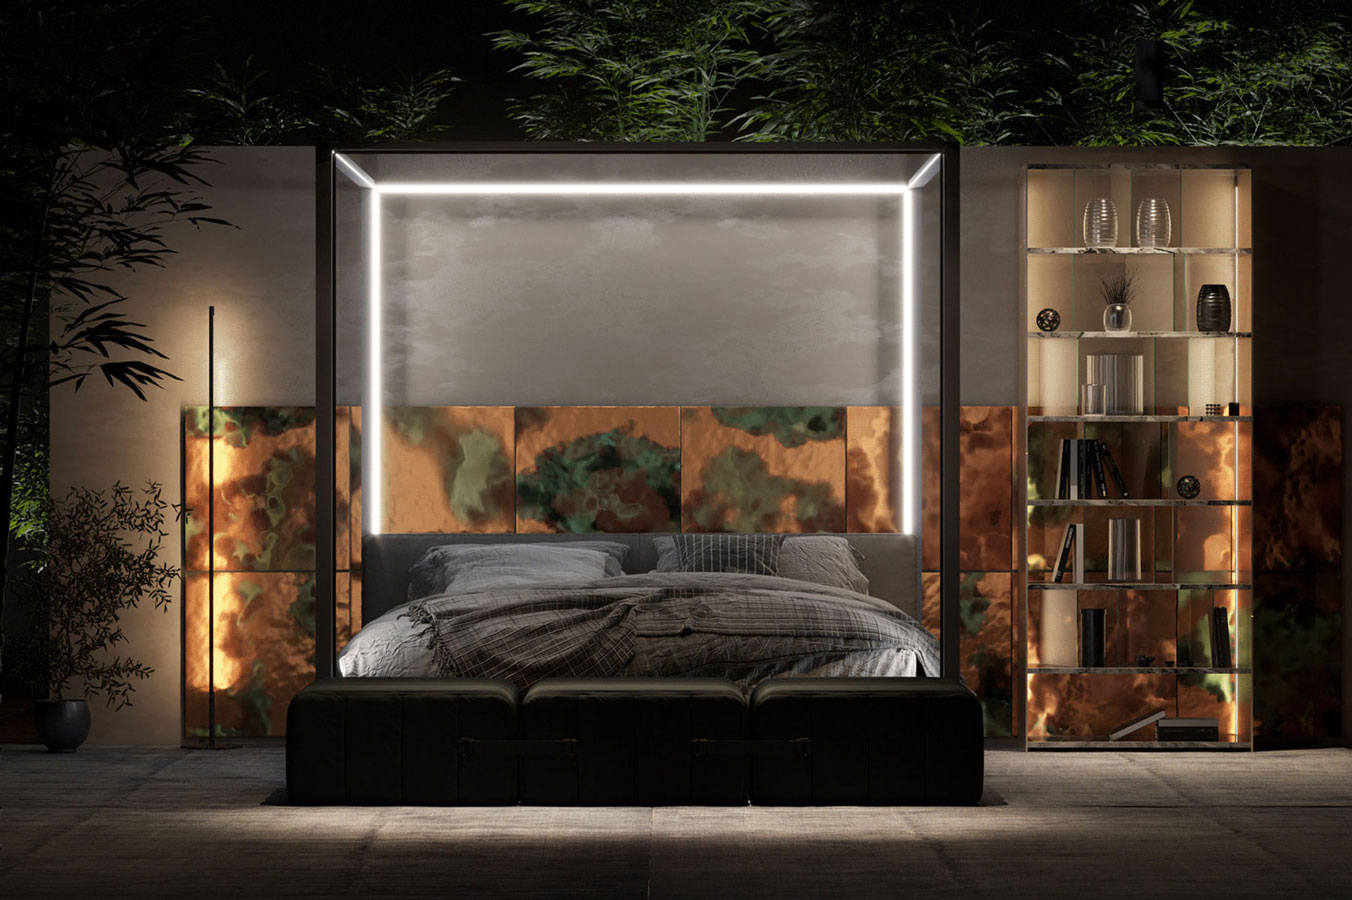 Une chambre masculine et contemporaine avec un lit éclairé par des néons blanc, la tête de lit est en cuivre martelé et il y a une végétation luxuriante sur les côtés et au dessus du lit